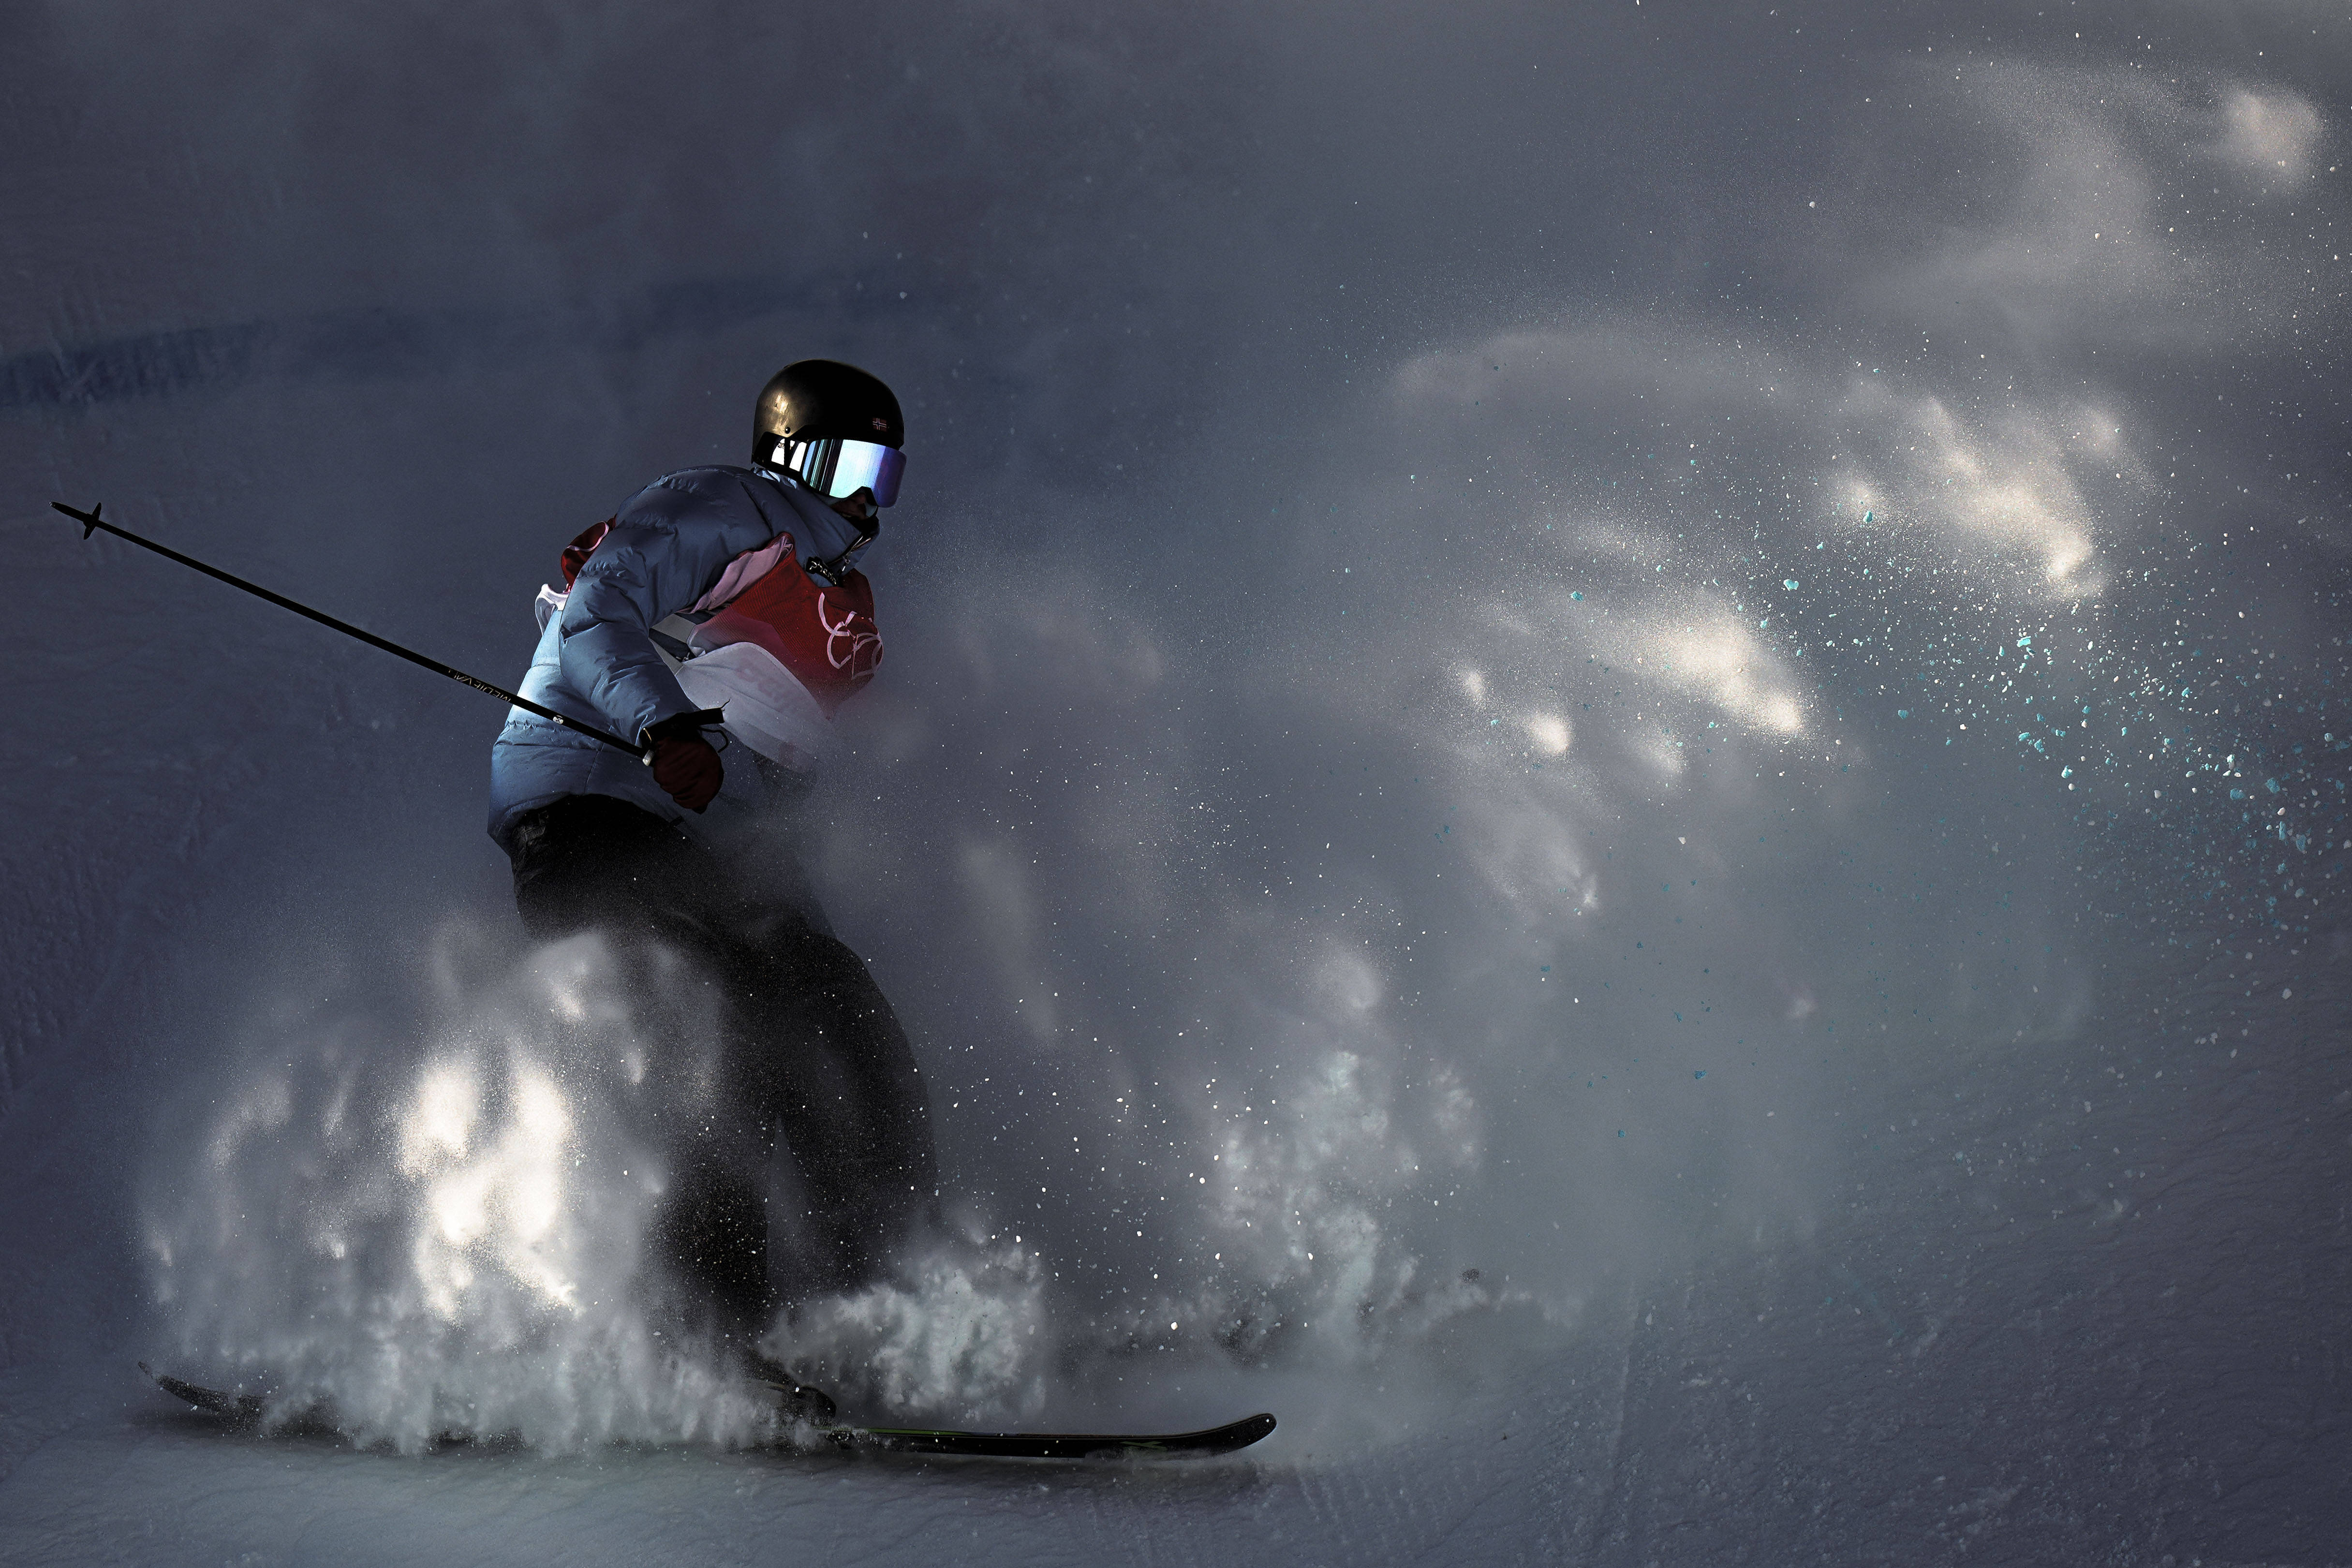 冬奥滑雪背景图片